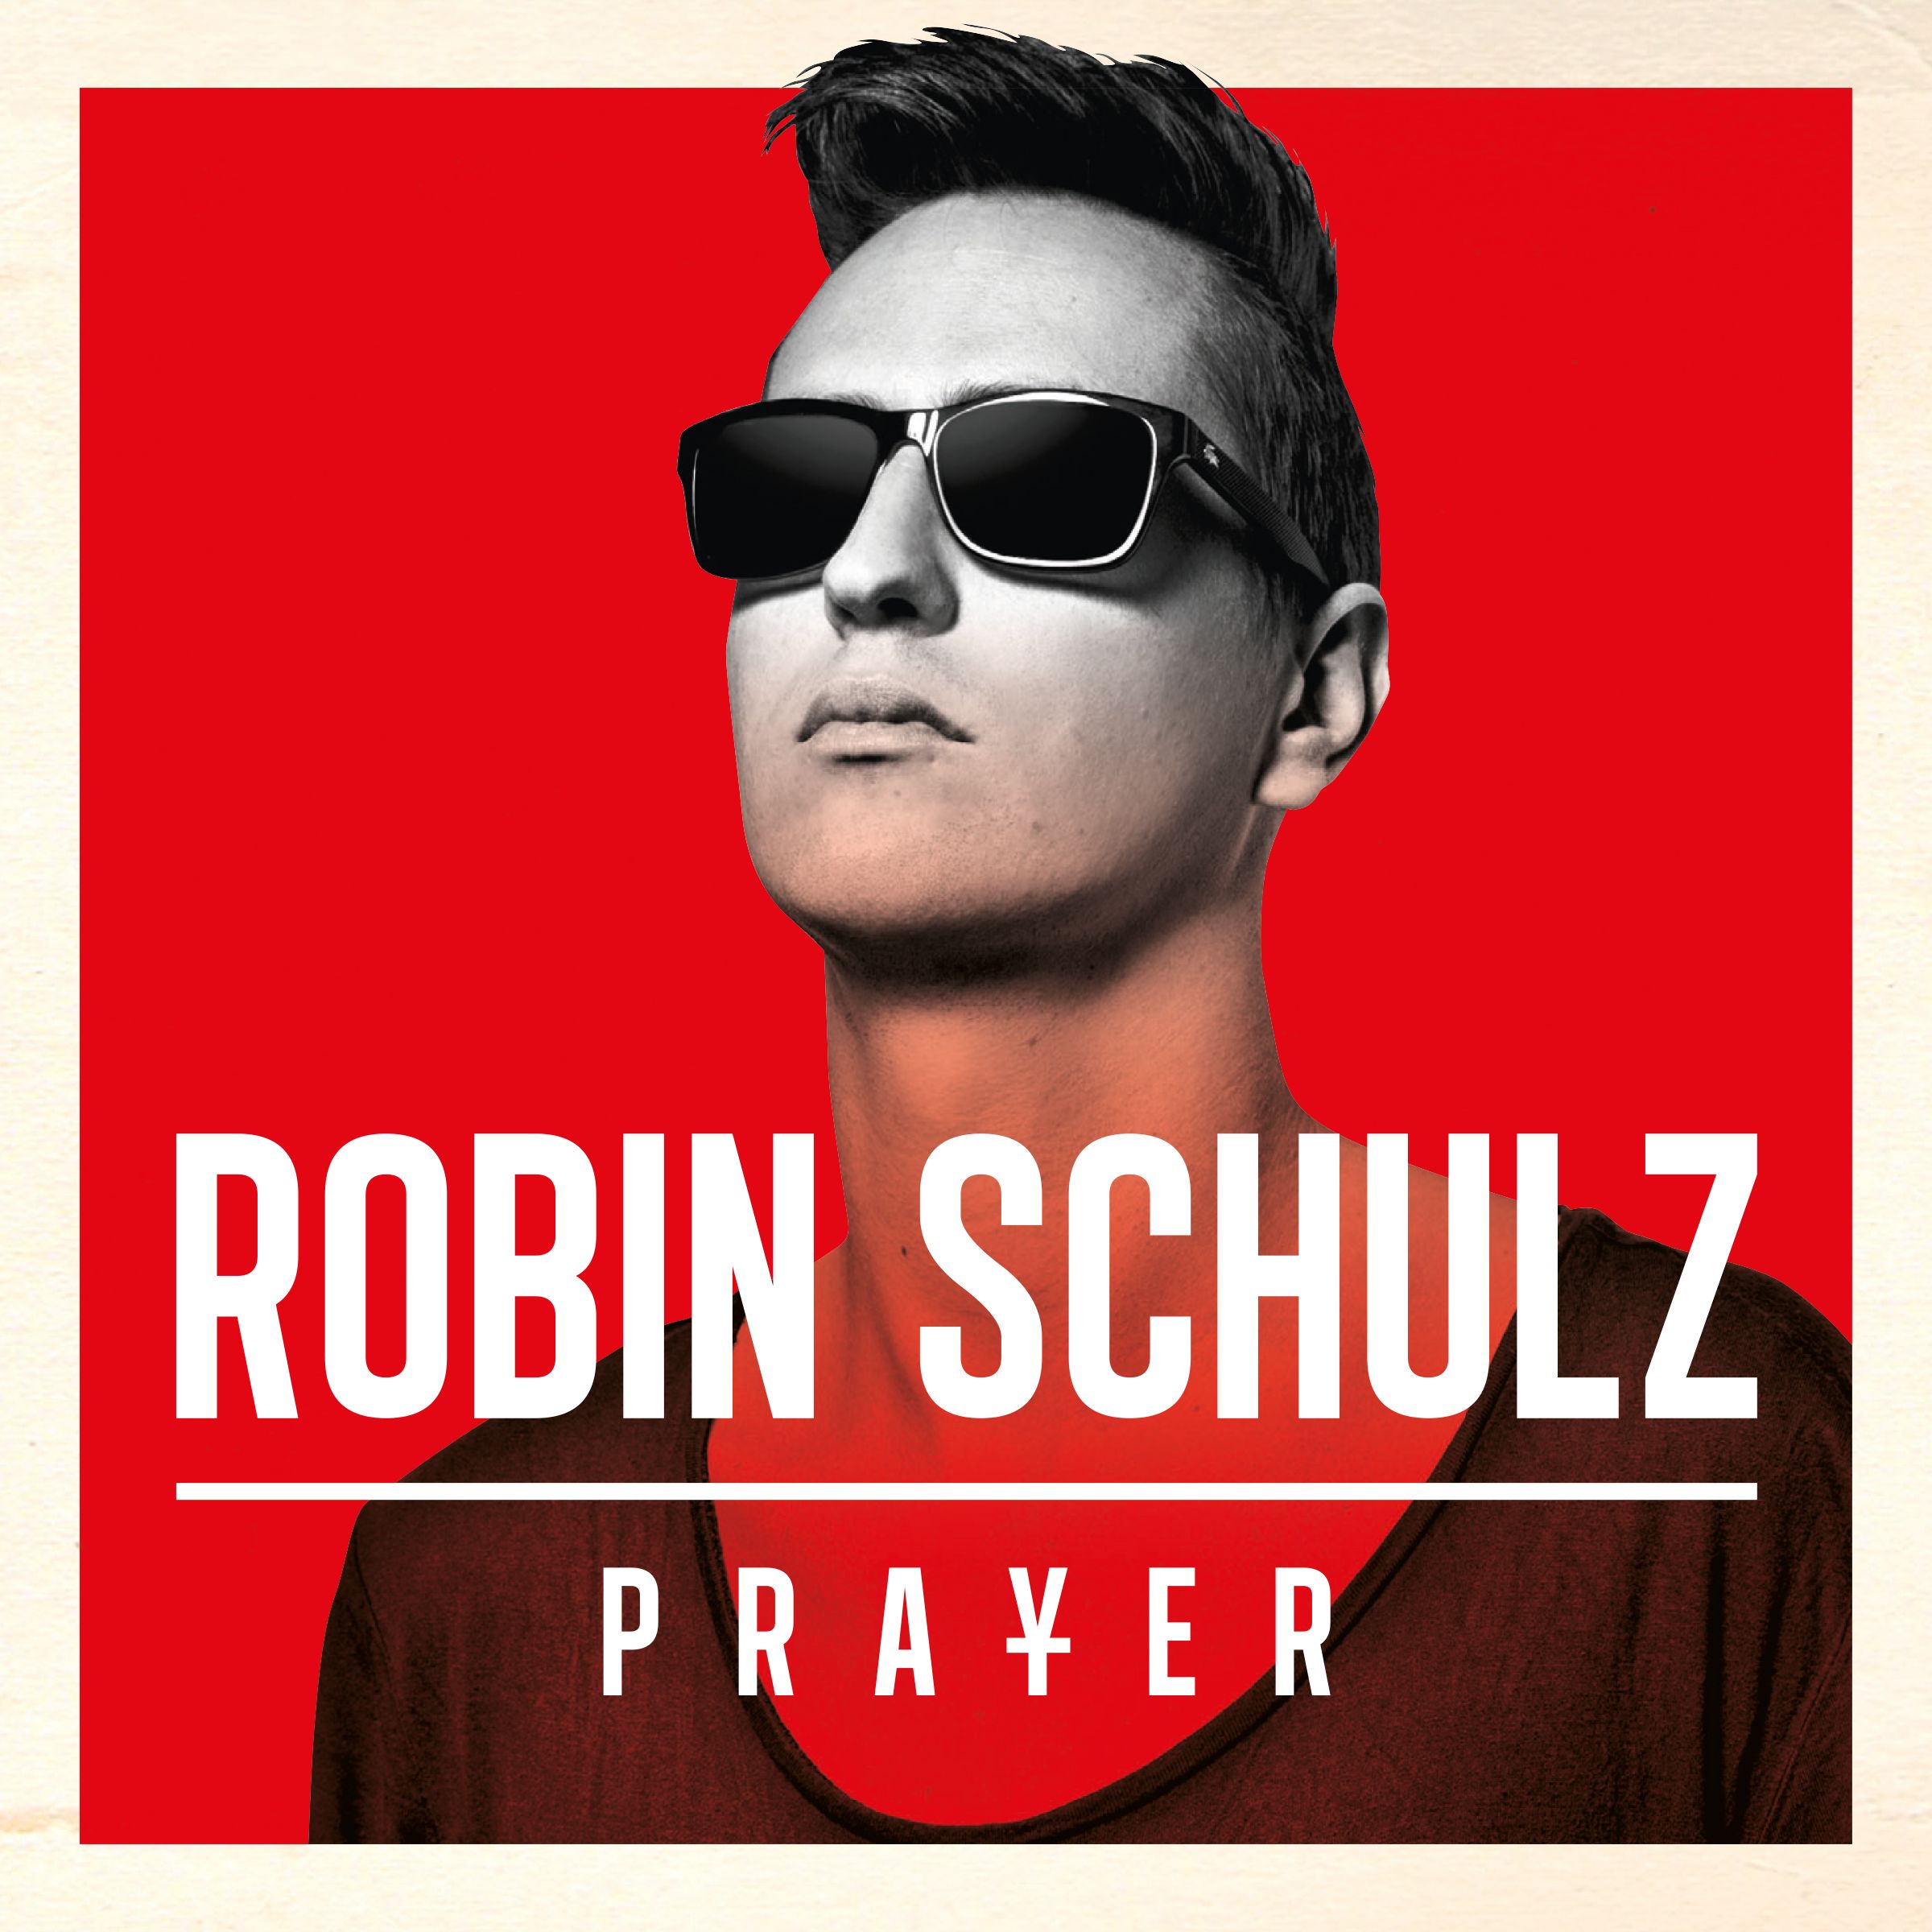 Prayer in C (Robin Schulz Radio Edit)